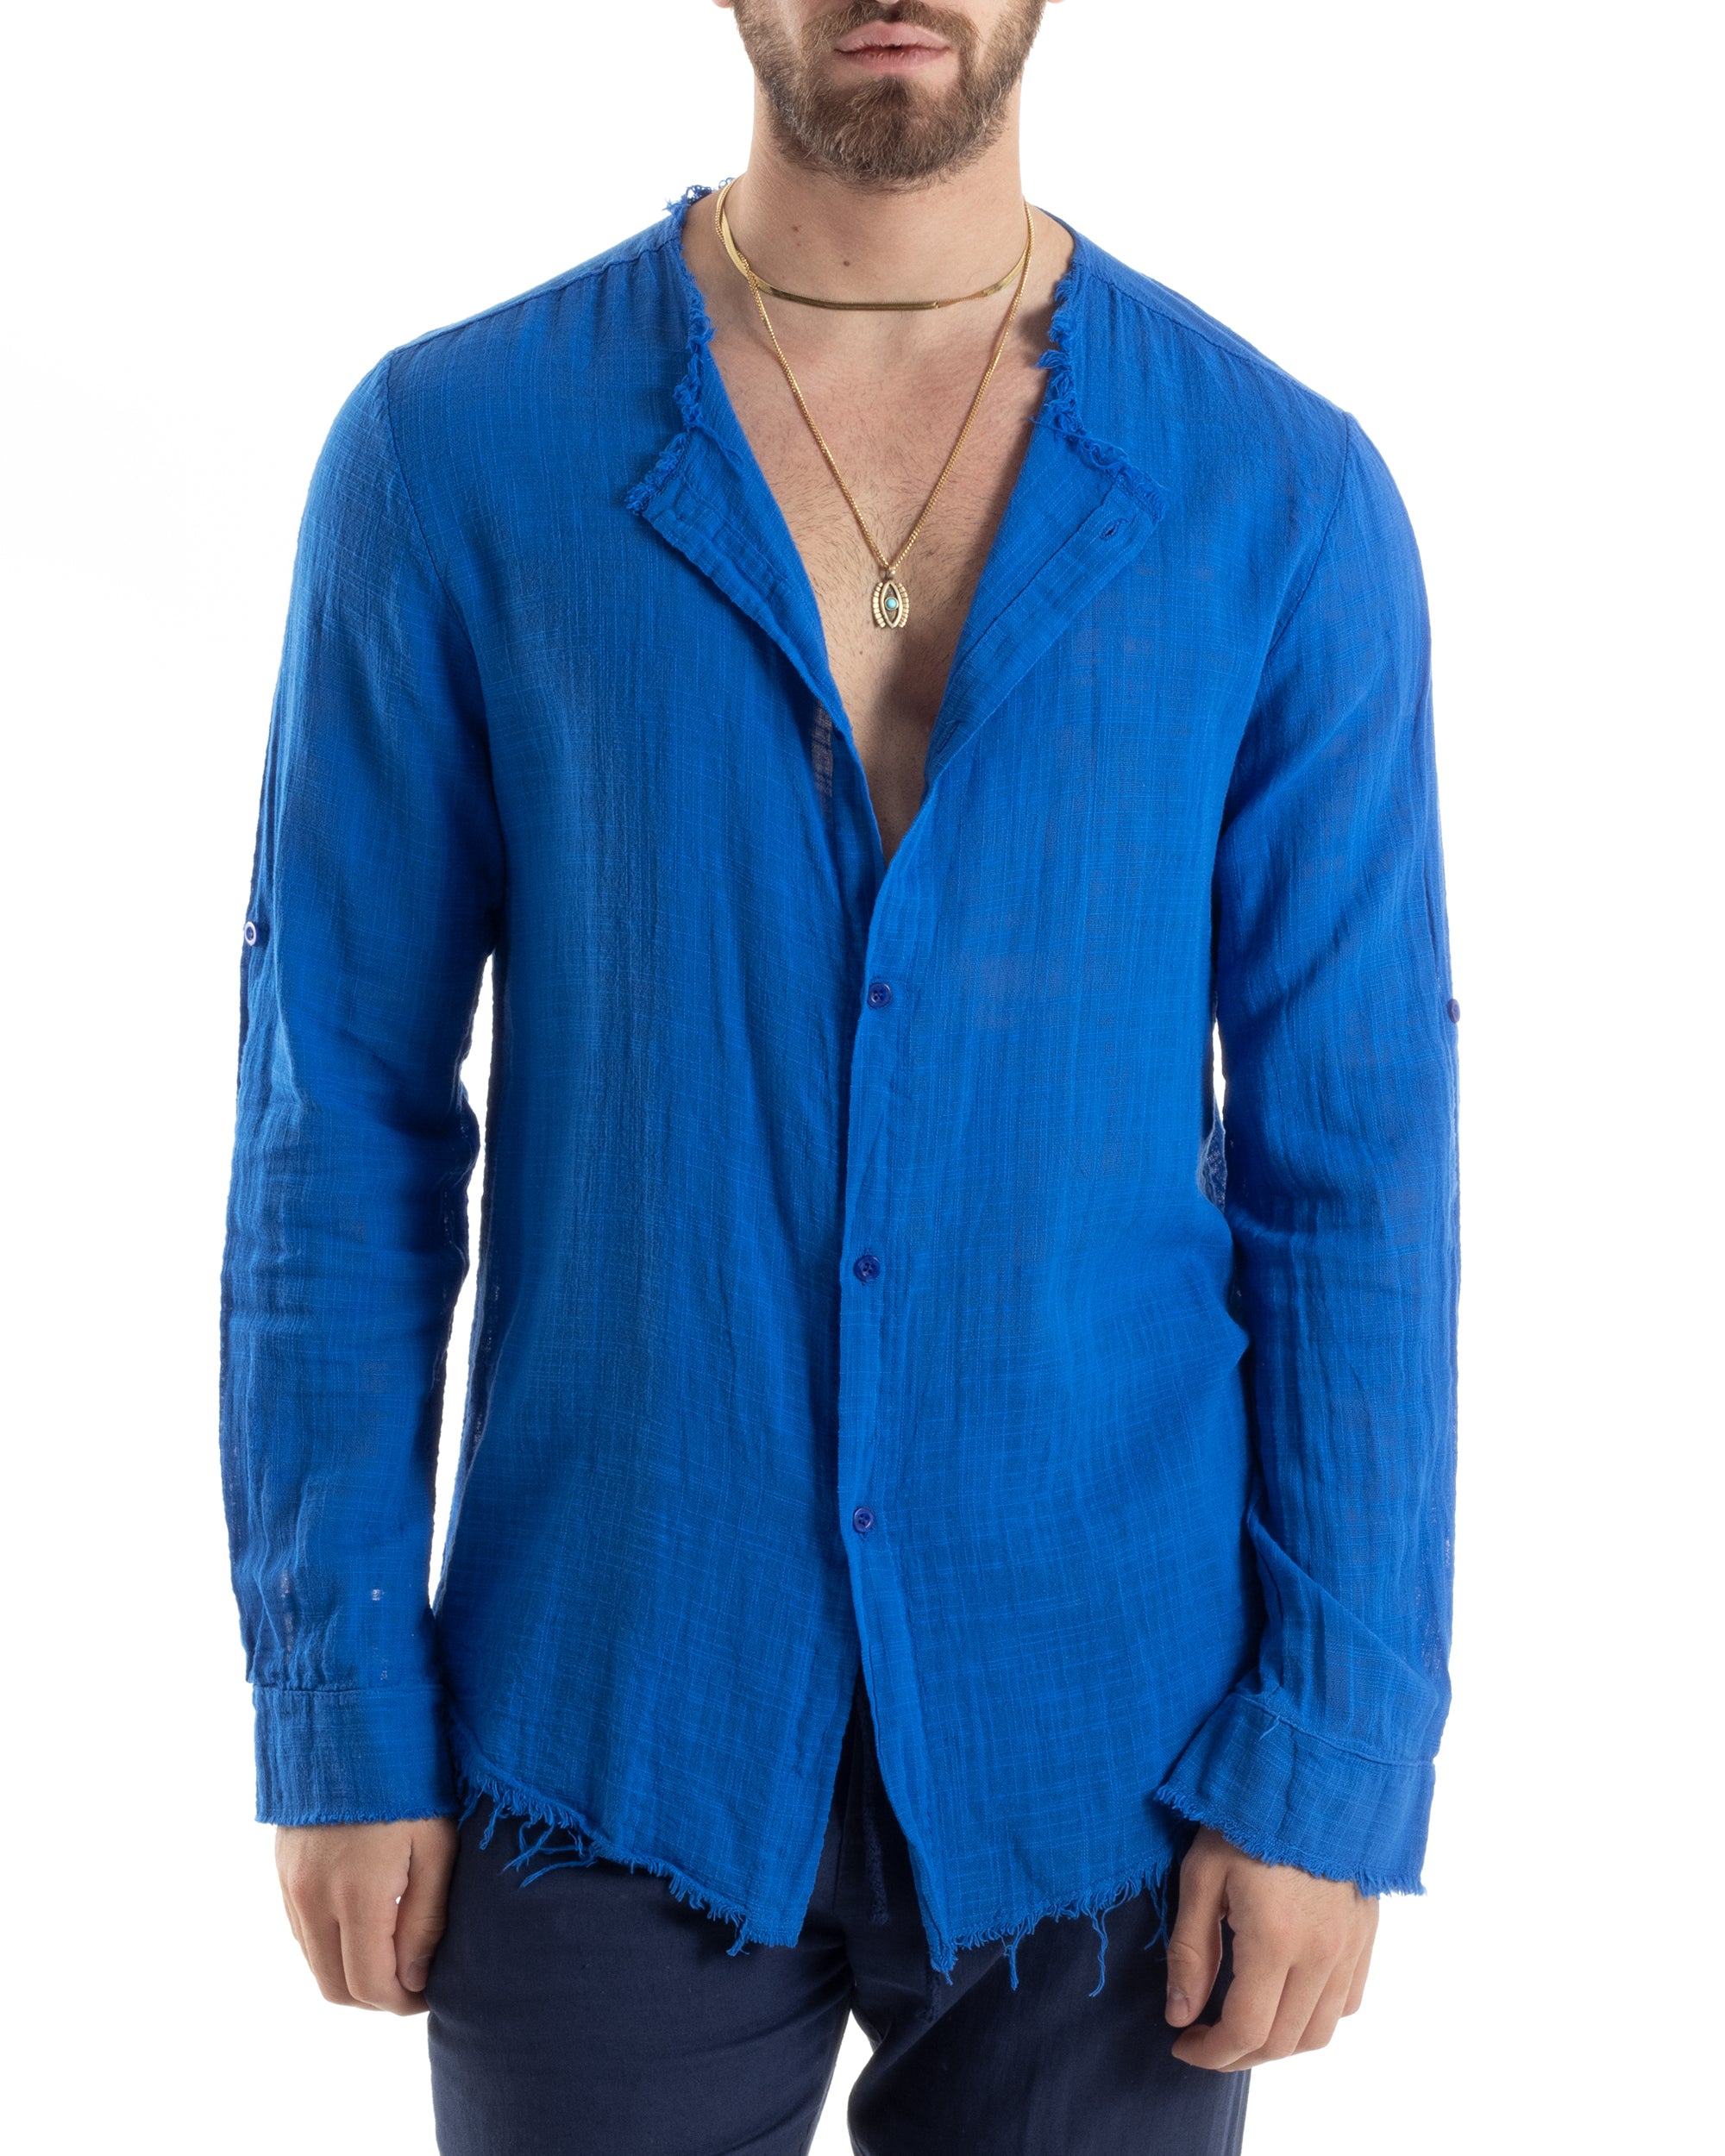 Camicia Uomo Sfrangiata Cotone Lino Manica Lunga Tinta Unita Blu Royal GIOSAL-C2842A